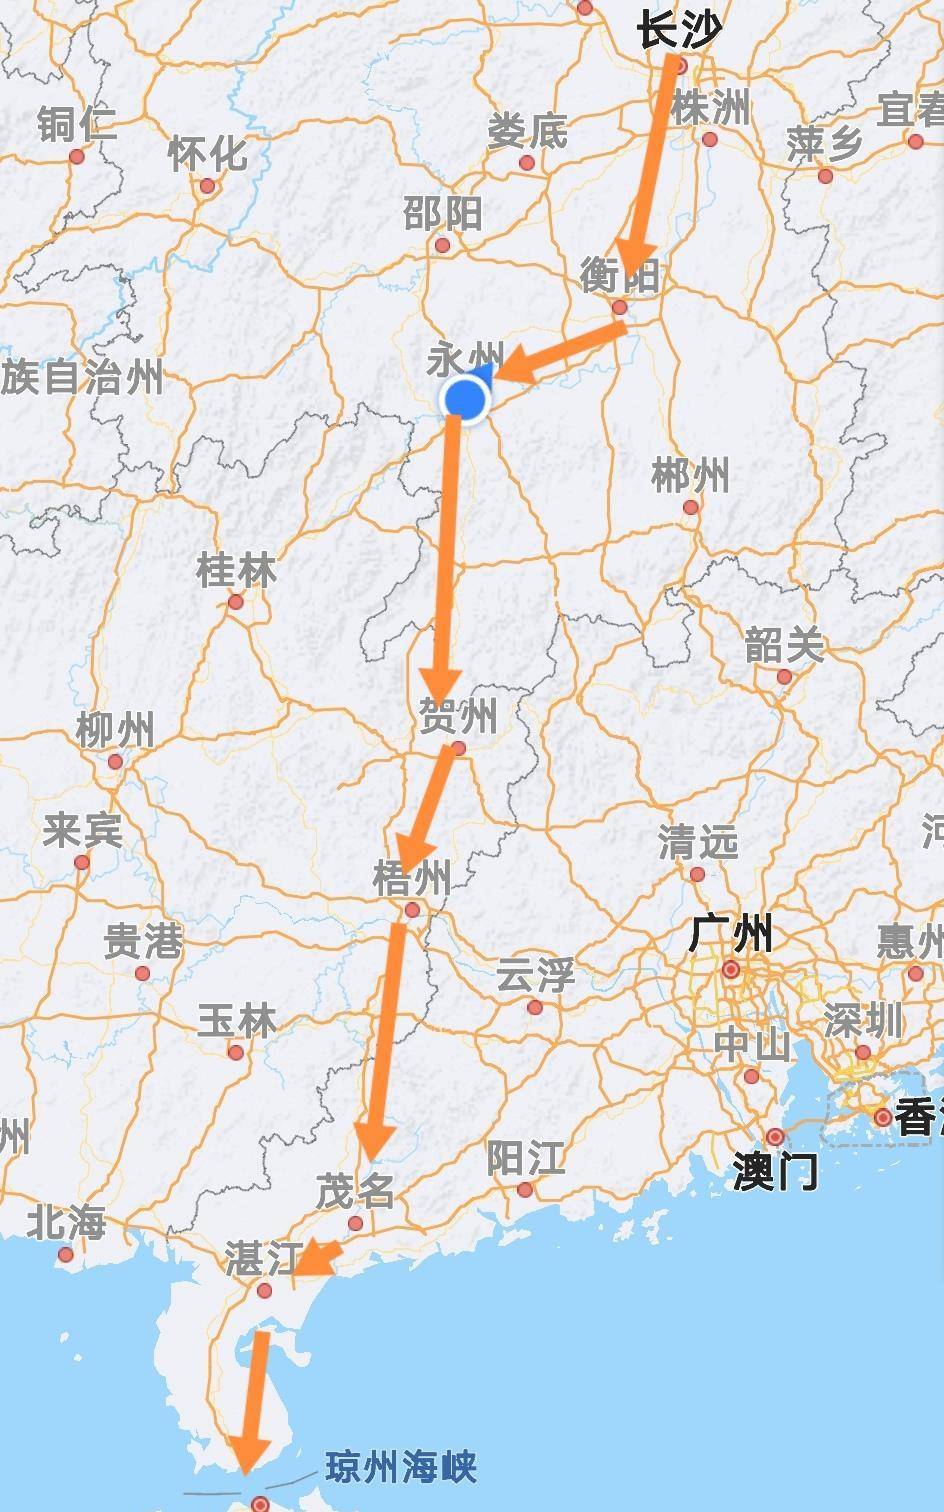 其中北京到长沙可以用京广高铁线,节约资源和资金